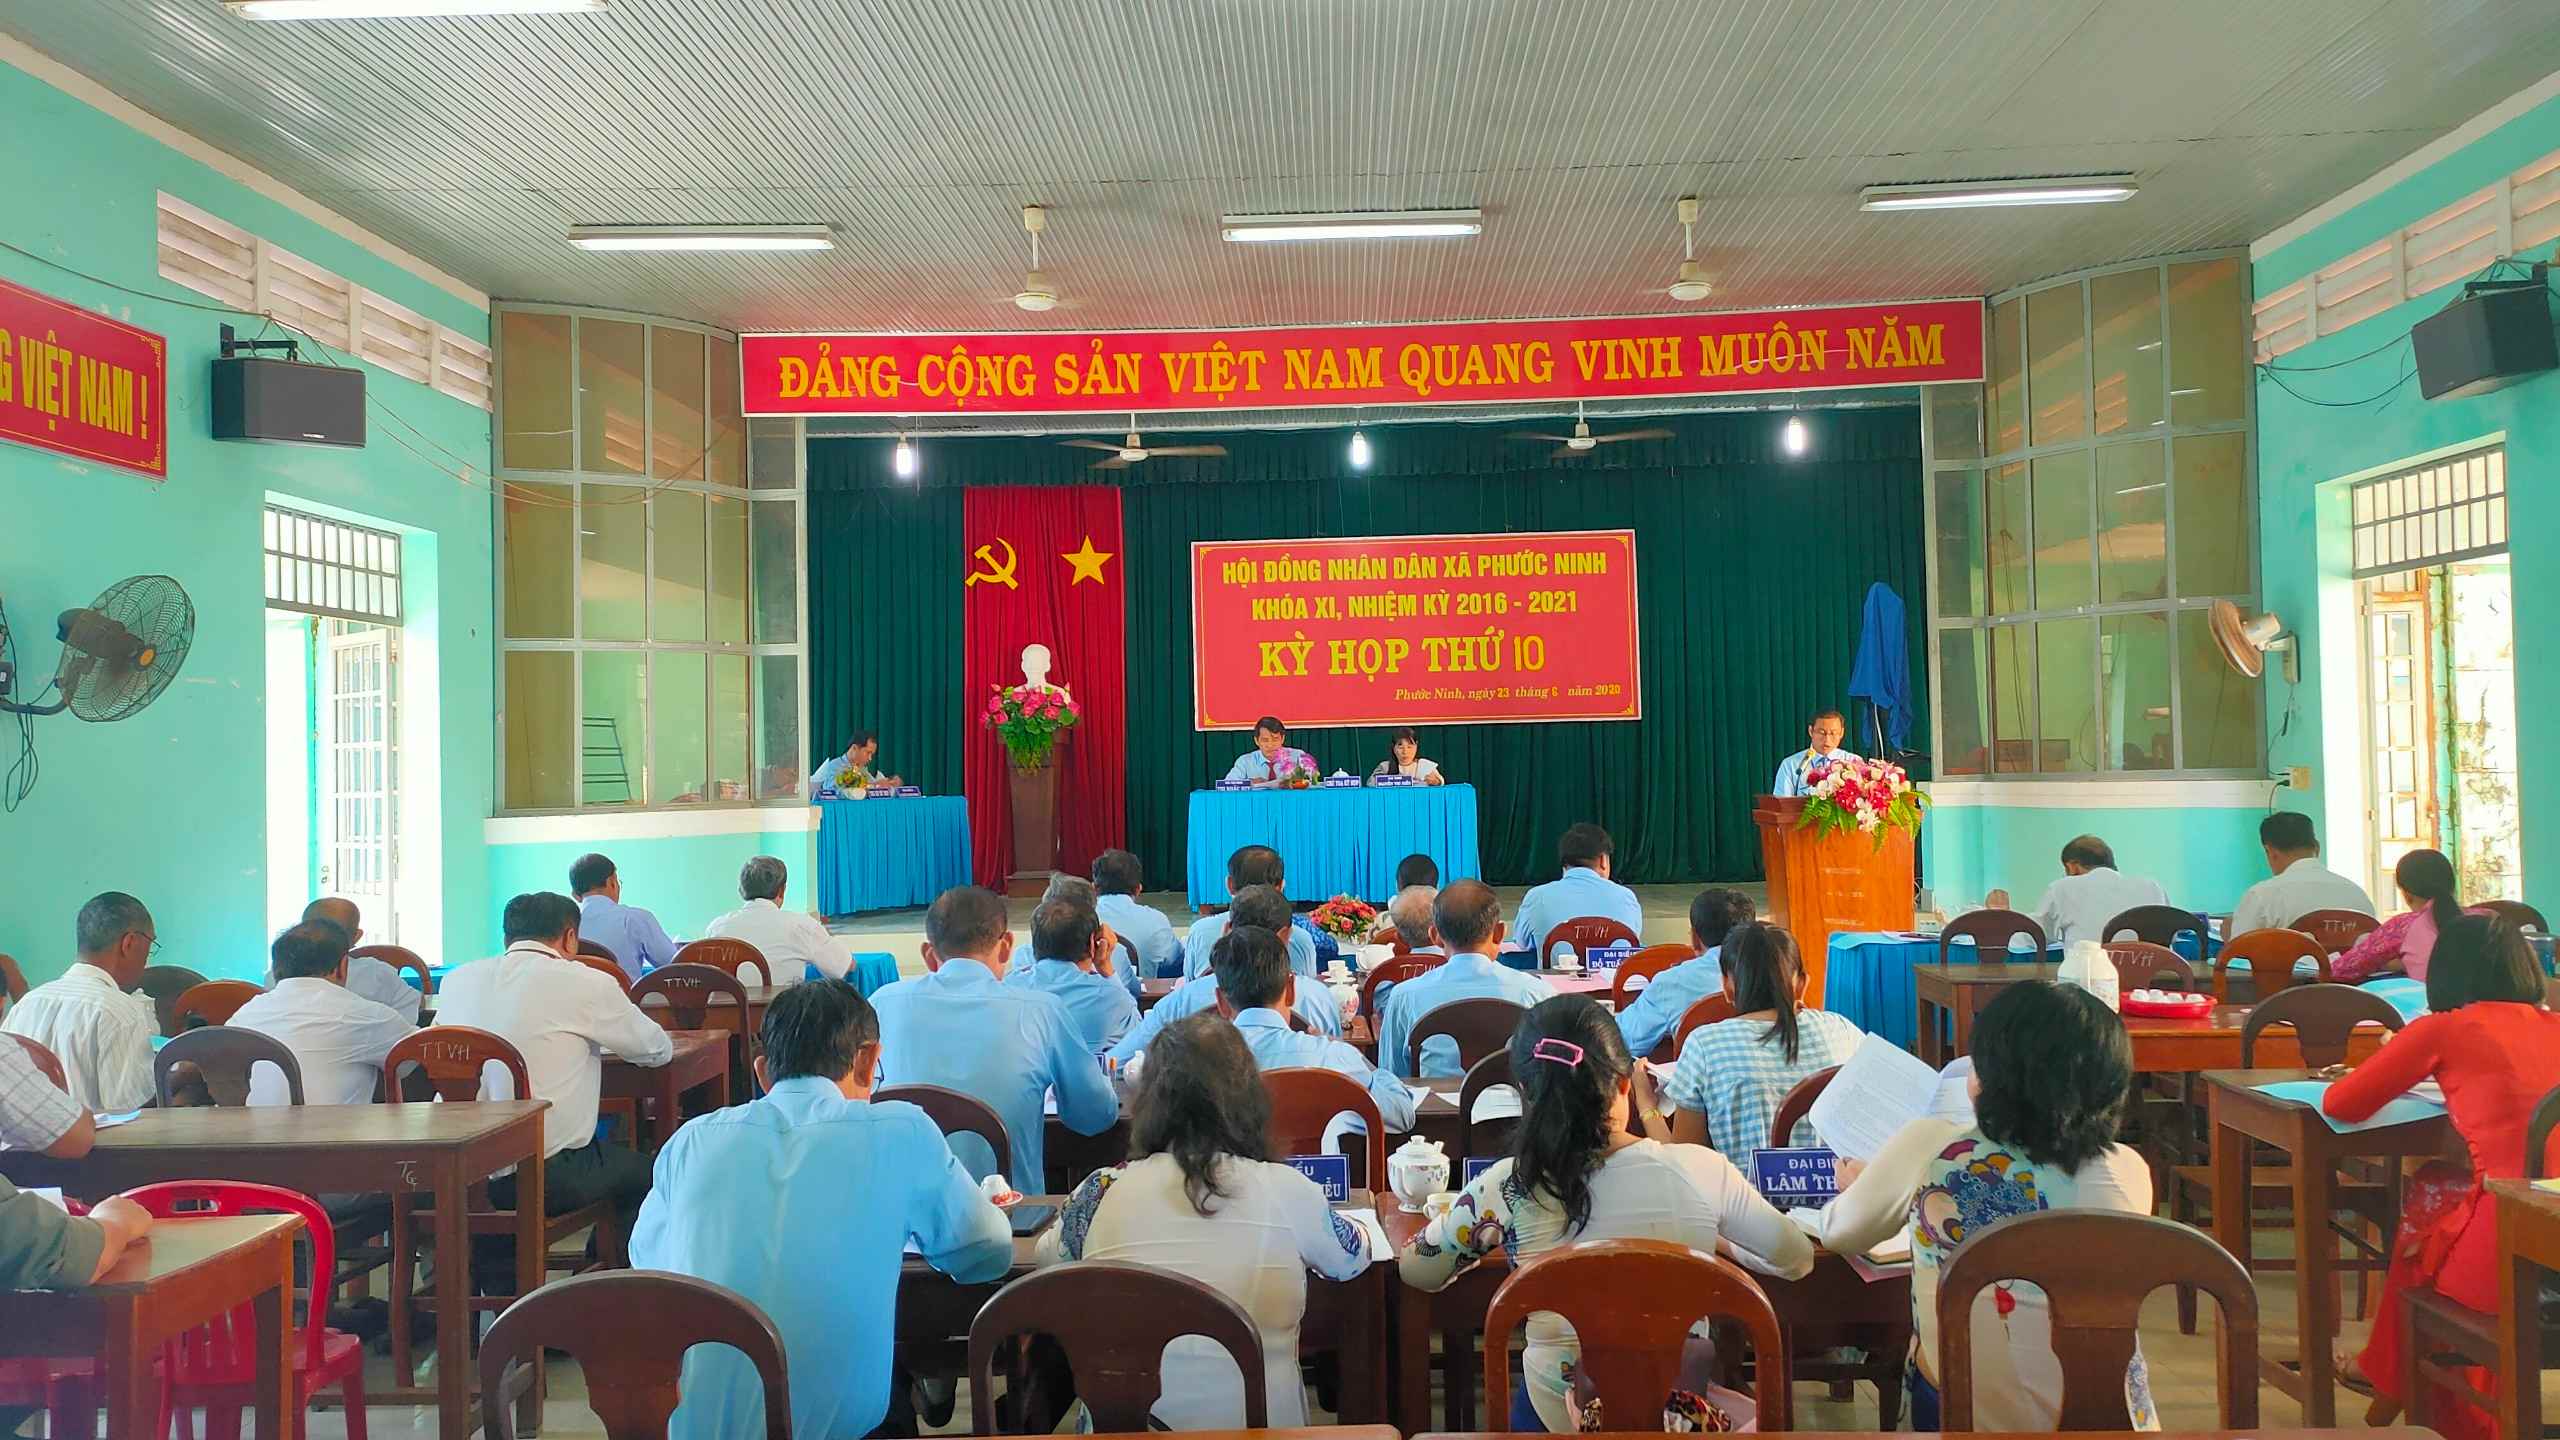 Hội đồng nhân dân xã Phước Ninh, huyện Dương Minh Châu: Tổ chức kỳ họp thứ 10 HĐND xã khóa XI, nhiệm kỳ 2016-2021